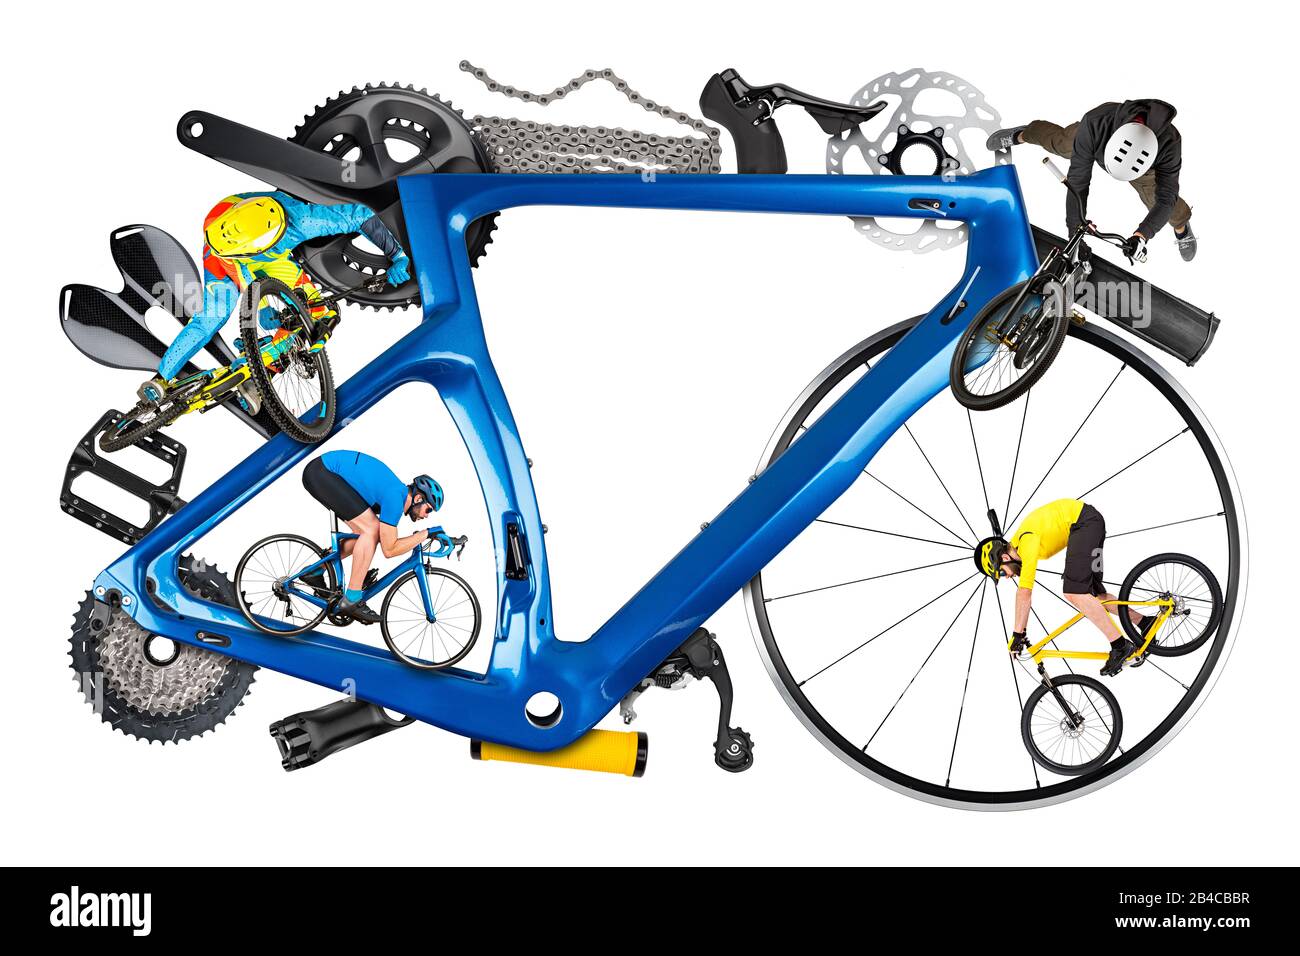 Radfahrersportler und Fahrradrahmen mit vielen Fahrradteilen aus Mountainbike-Rennen Abfahrt Enduro und Freestyle-Schmutzsprung. Radfahren und Sport conce Stockfoto